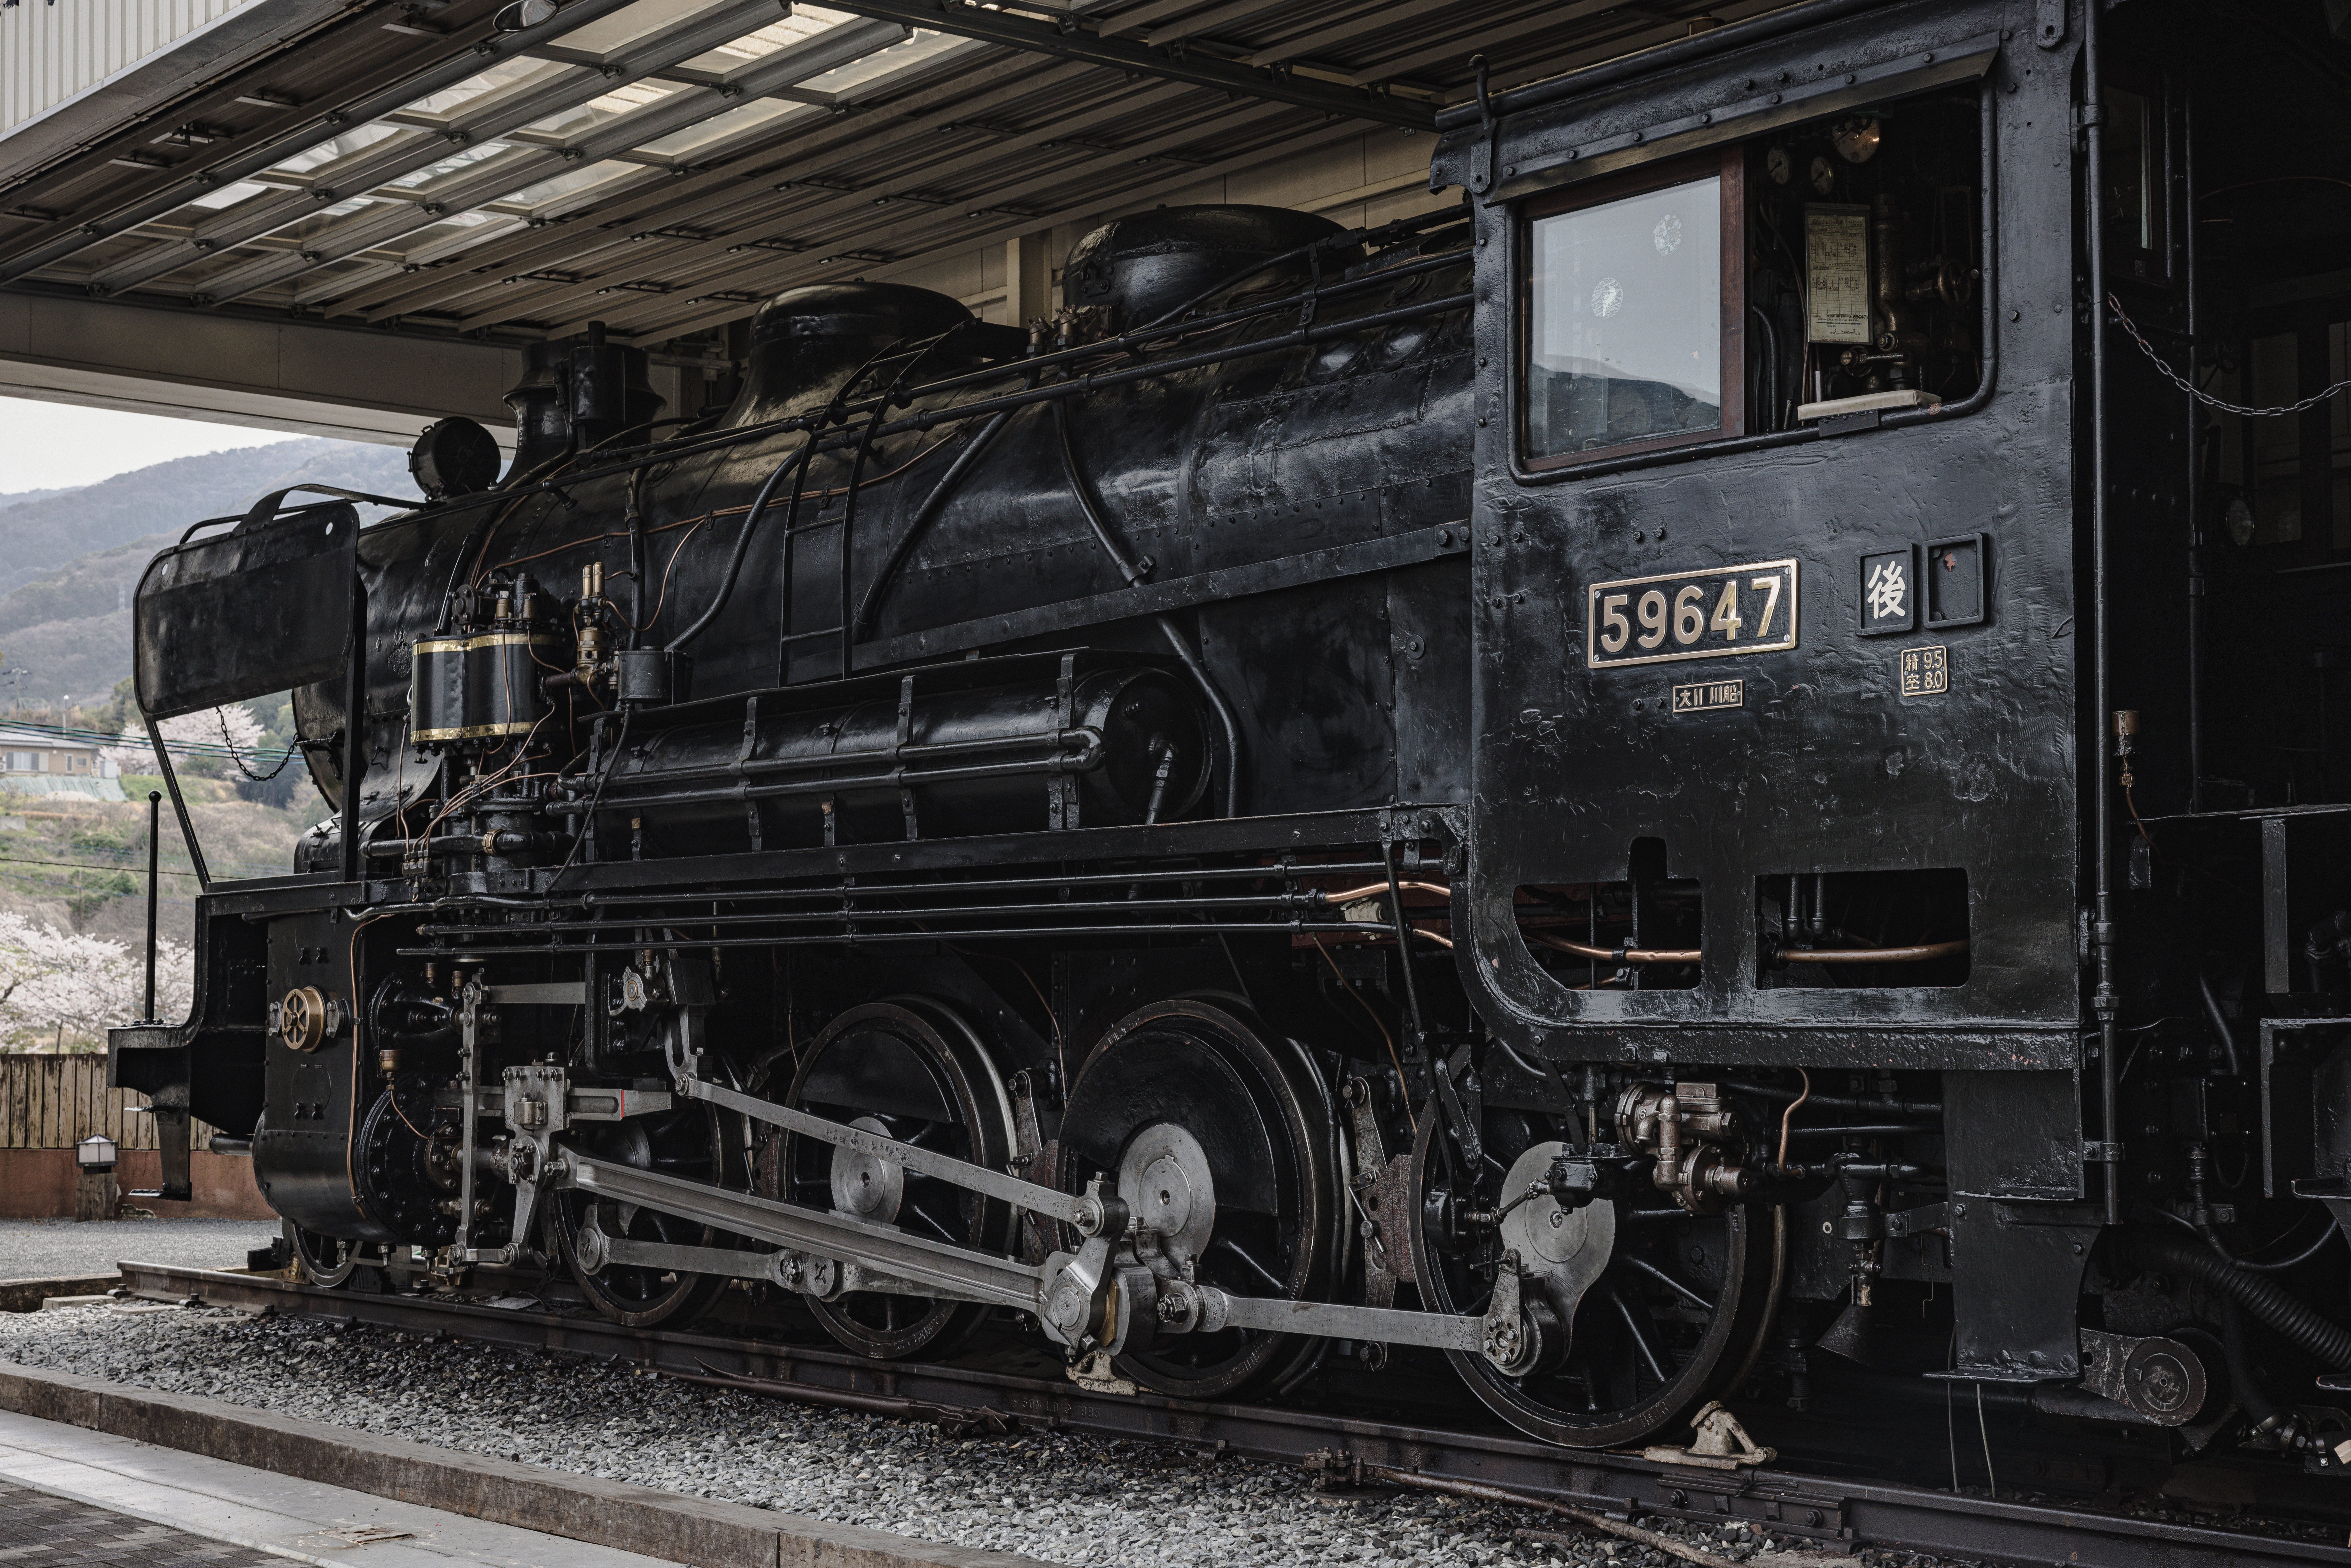 静態保存蒸気機関車・9600形59647号機の ボイラー部全景の無料写真素材